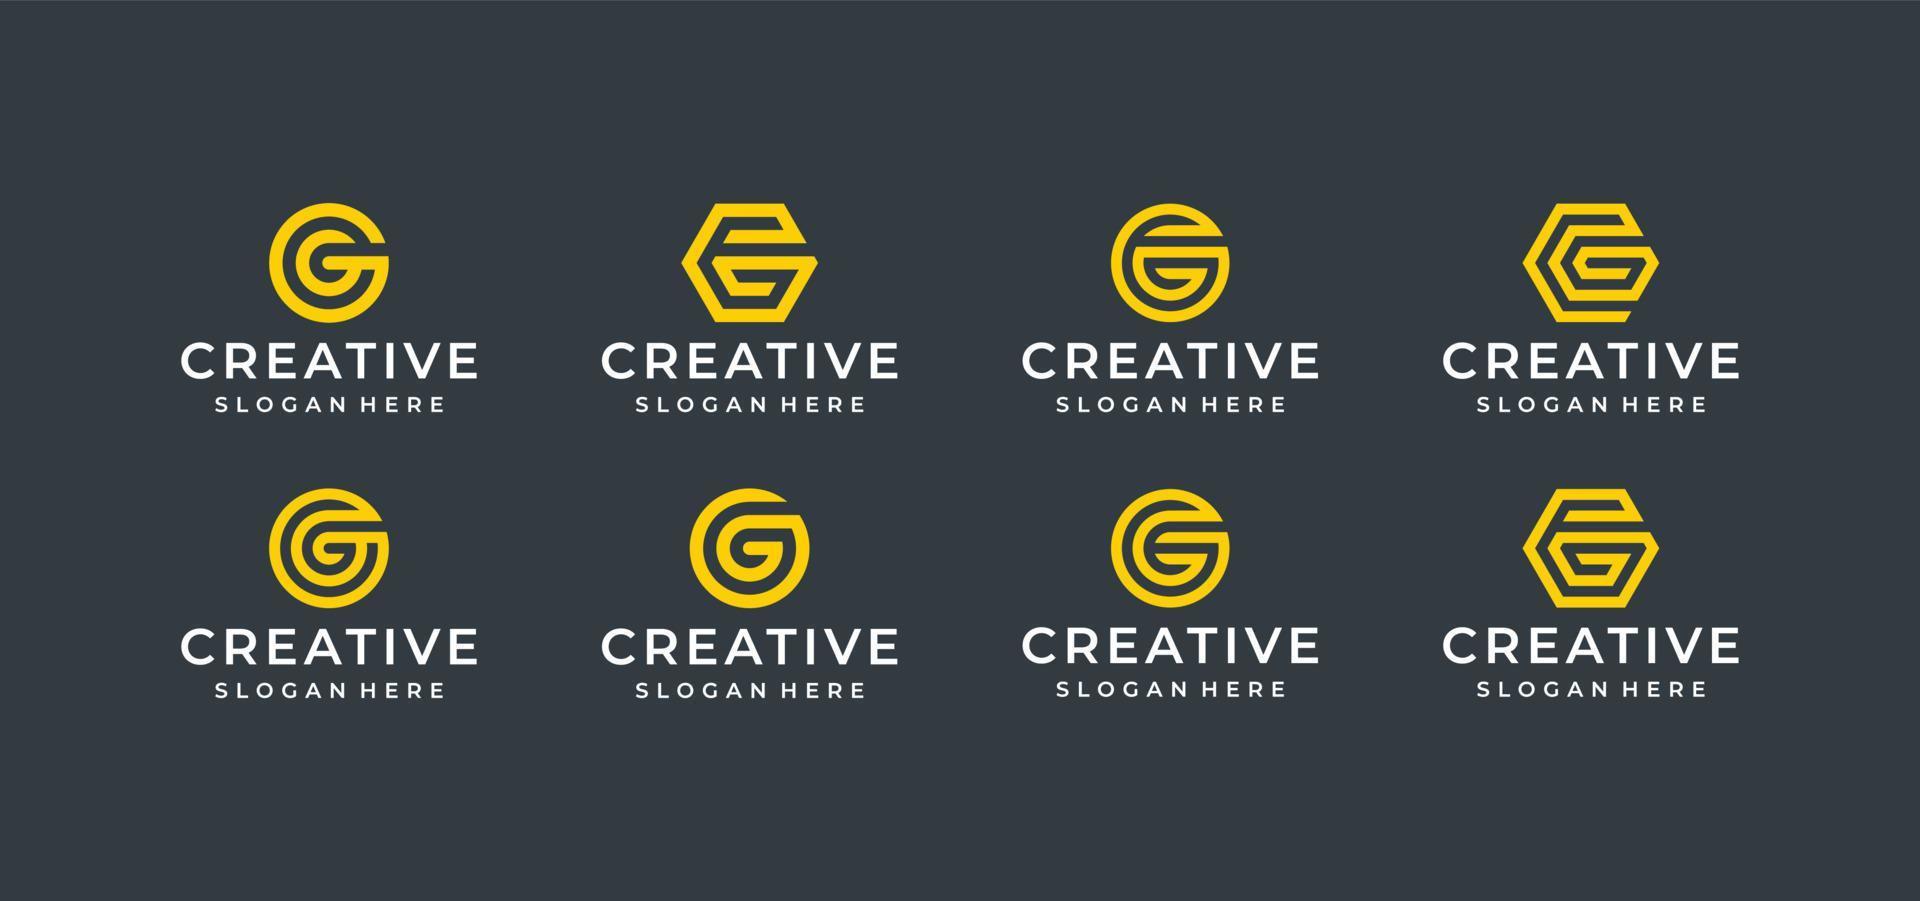 G letter logo design bundle in line art style vector